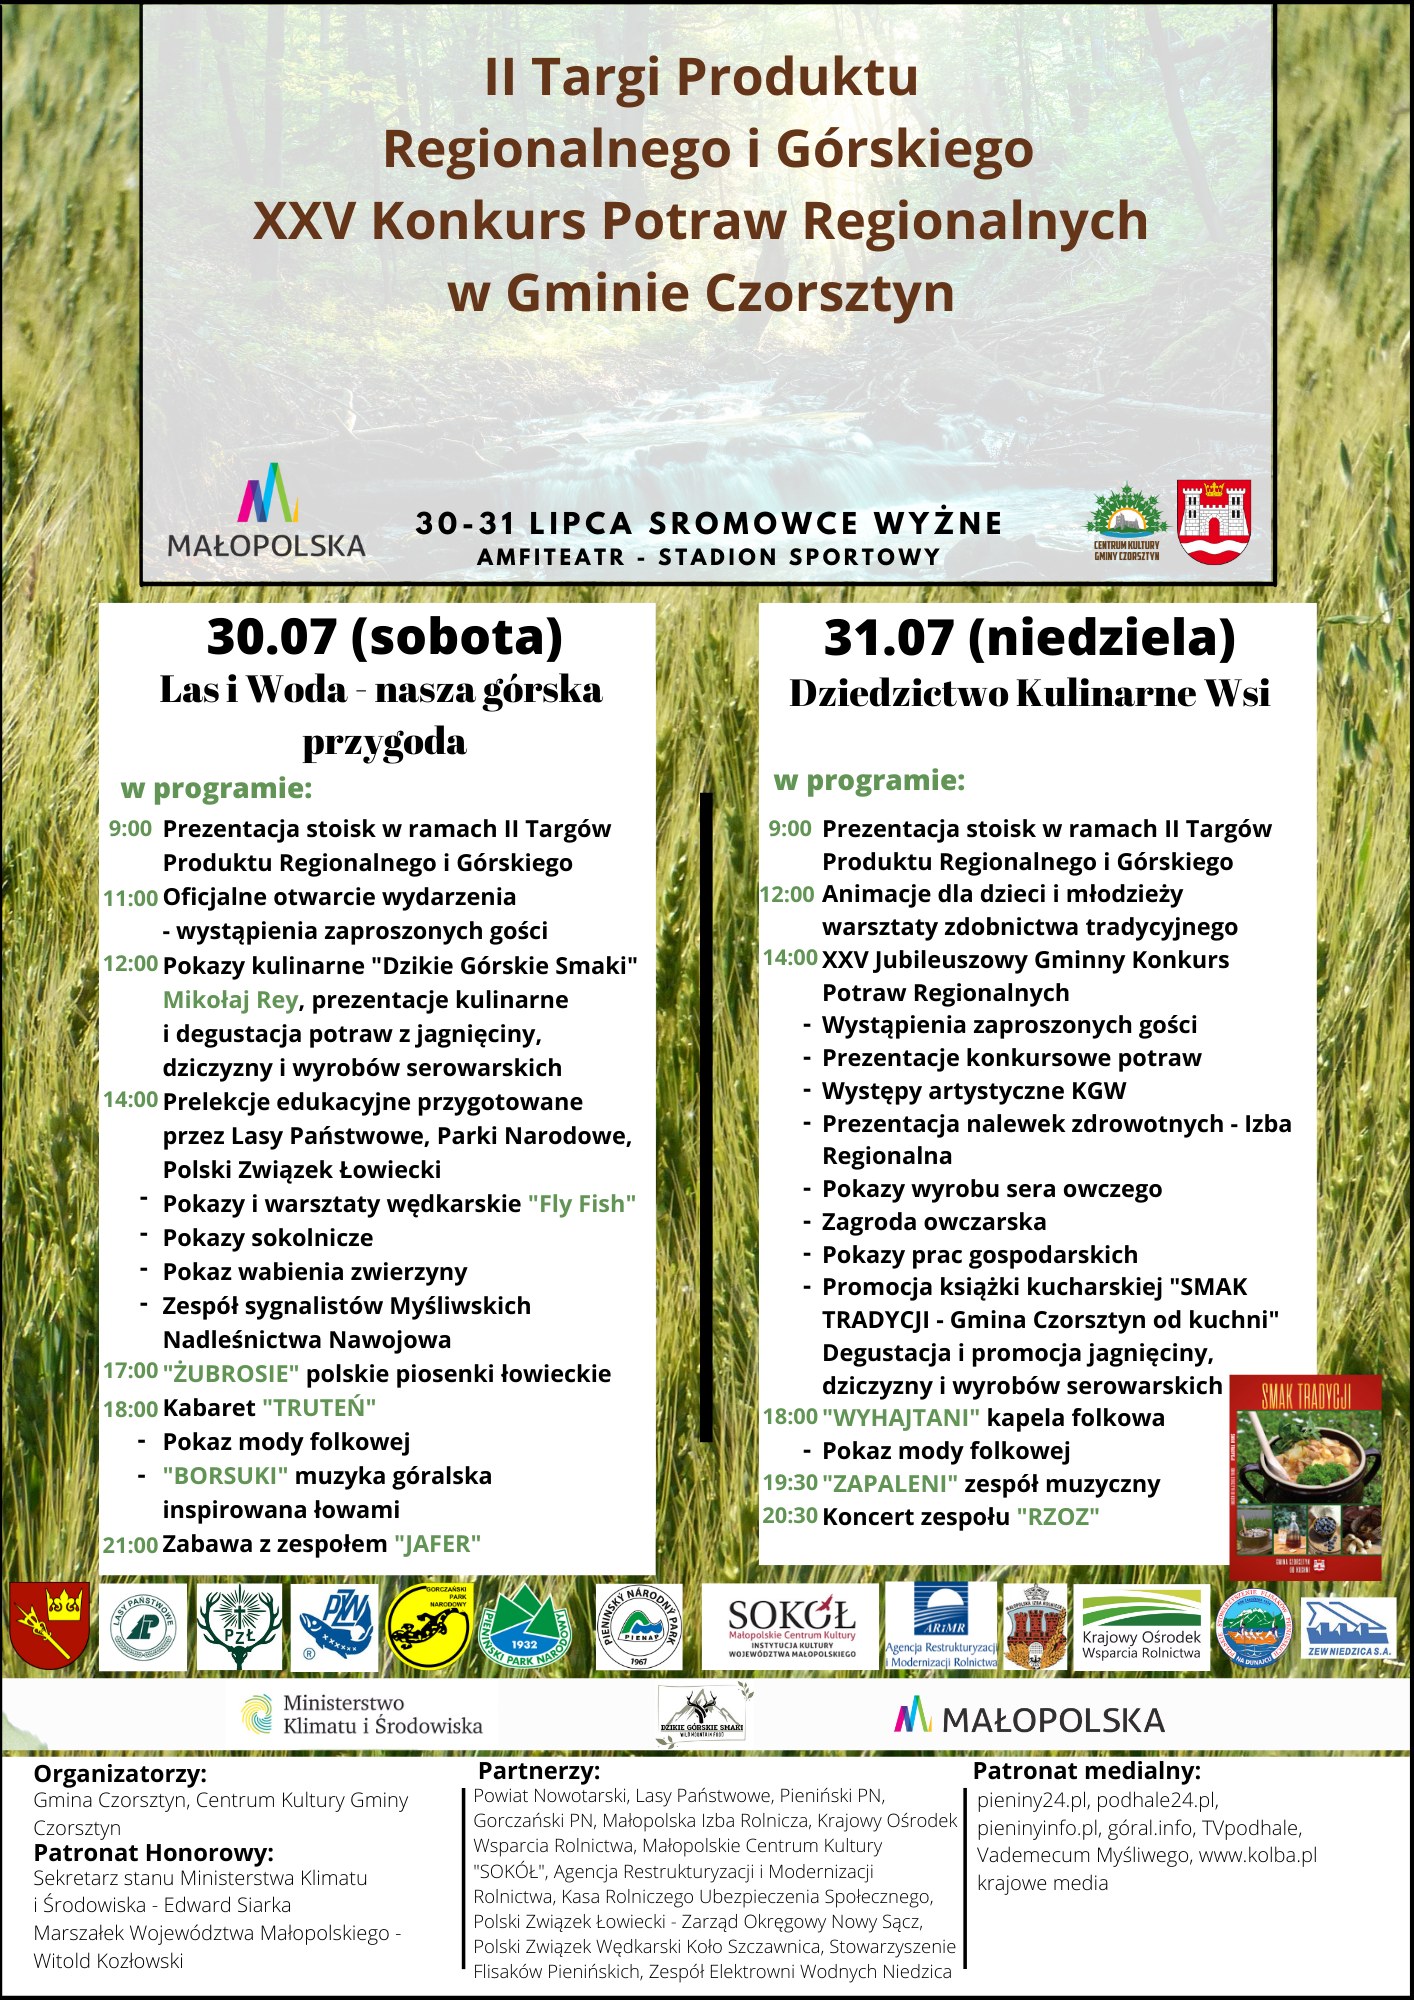 II Targi Produktu Regionalnego i Górskiego - XXV Konkurs Potraw Regionalnych w Gminie Czorsztyn